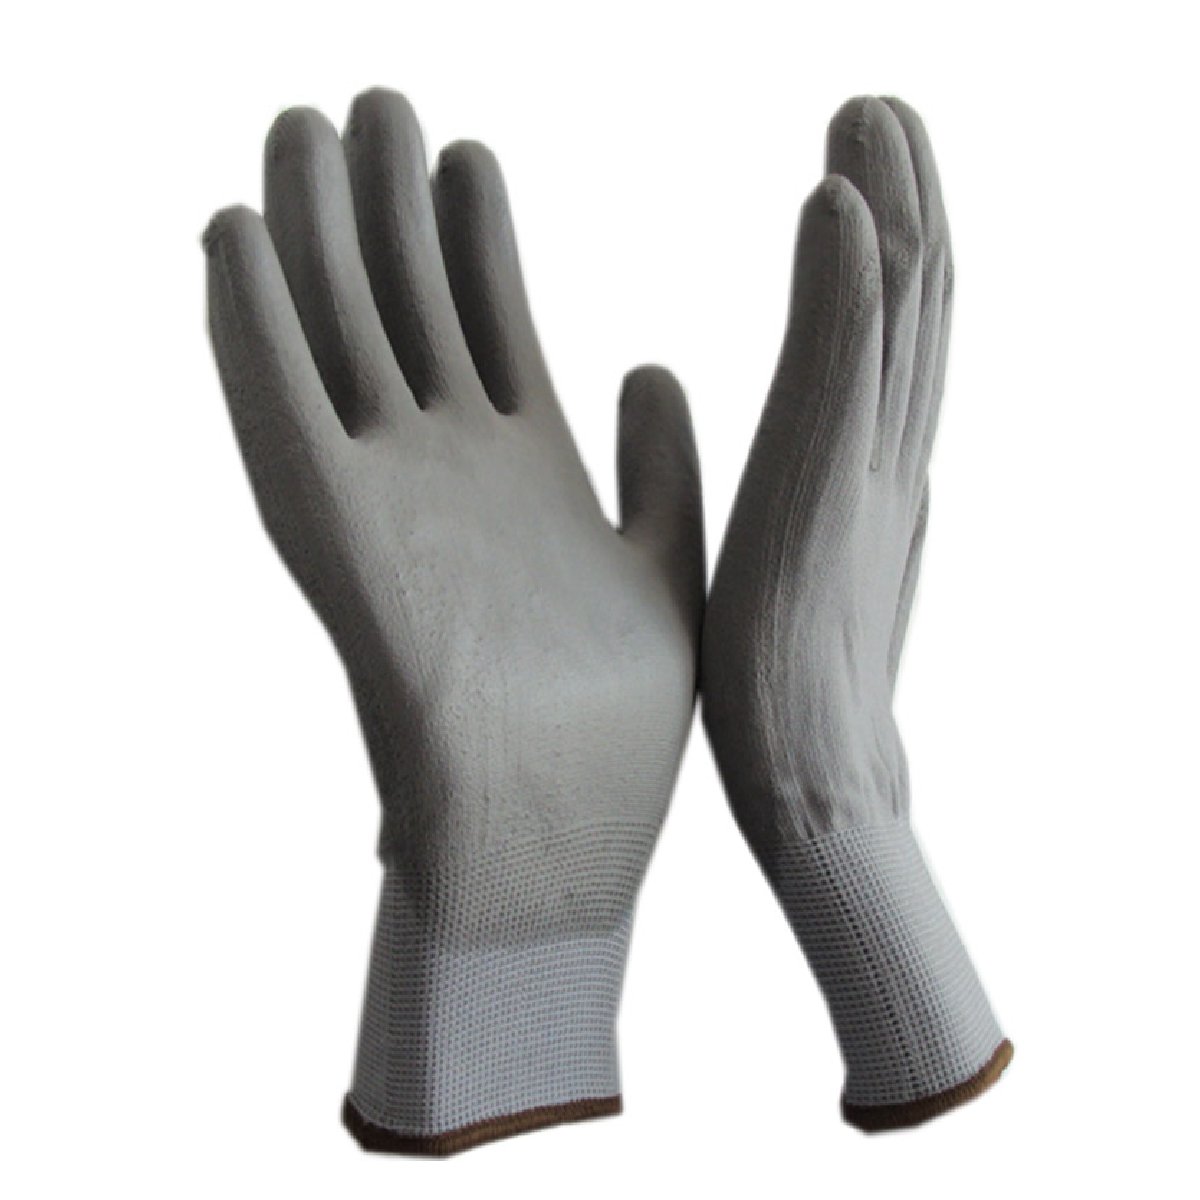 Перчатки рабочие с полиуретановым покрытием PU1, размер М (106732)Купить